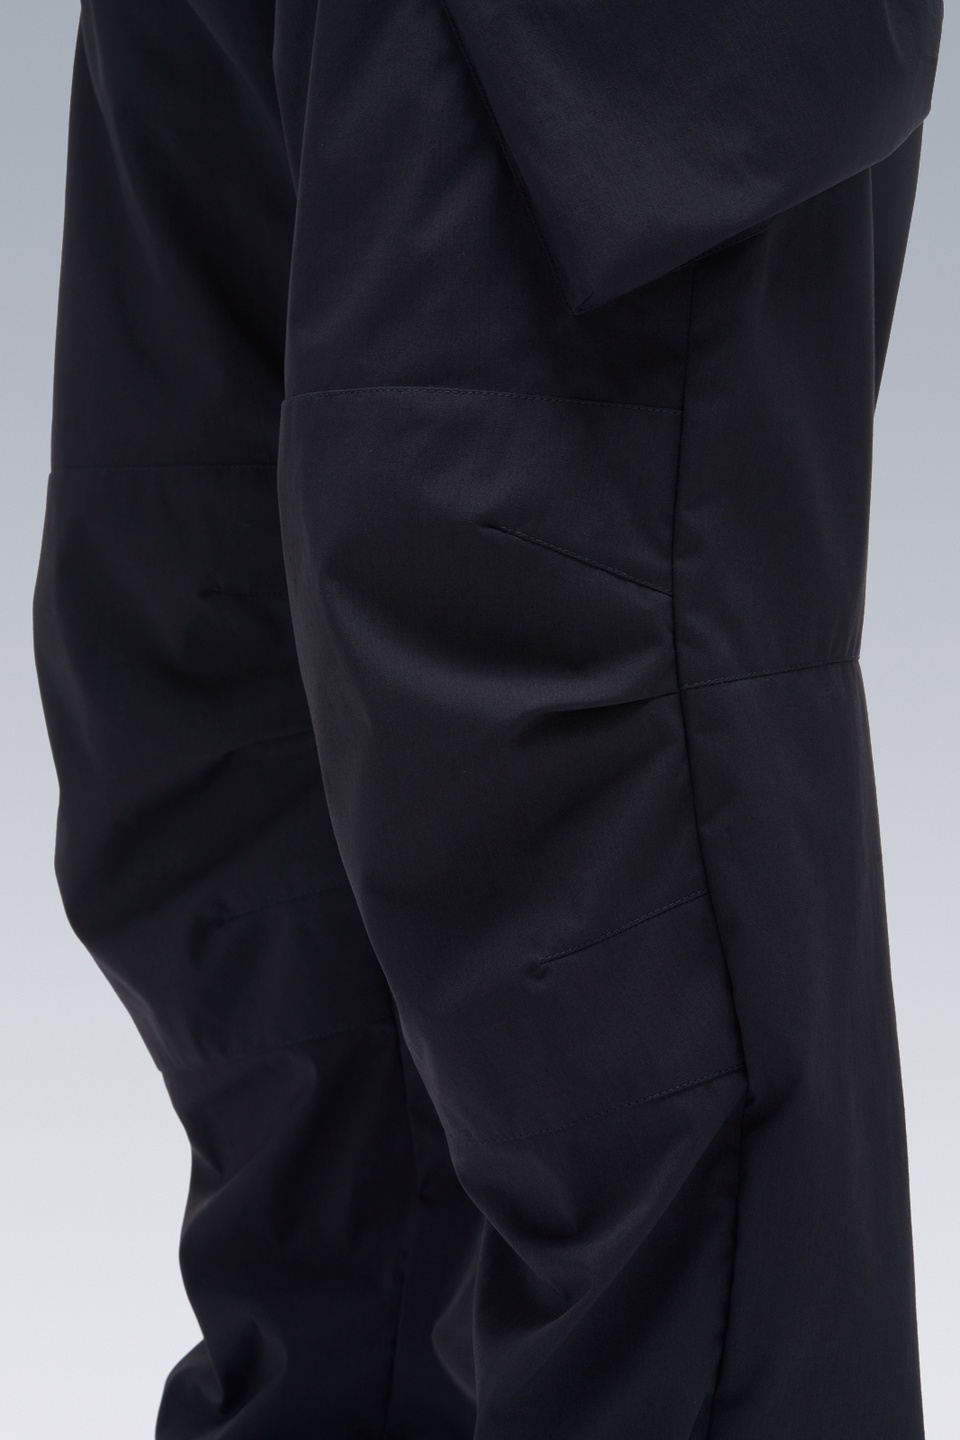 P24A-E Encapsulated Nylon Articulated BDU Trouser Black - 17